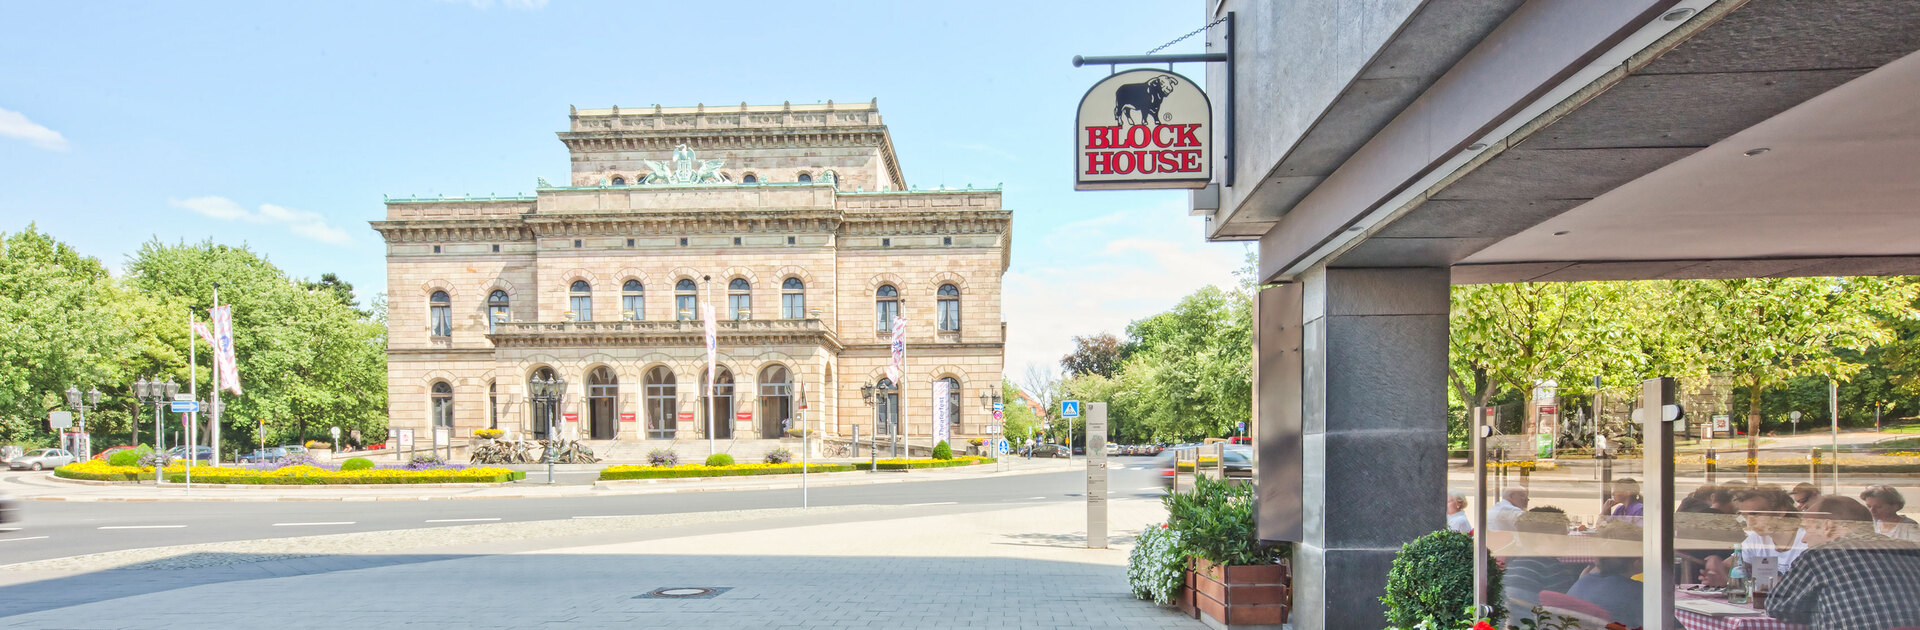 Blick an der Terrasse des BLOCK HOUSE Restaurants Braunschweig vorbei auf das Staatstheater in Braunschweig